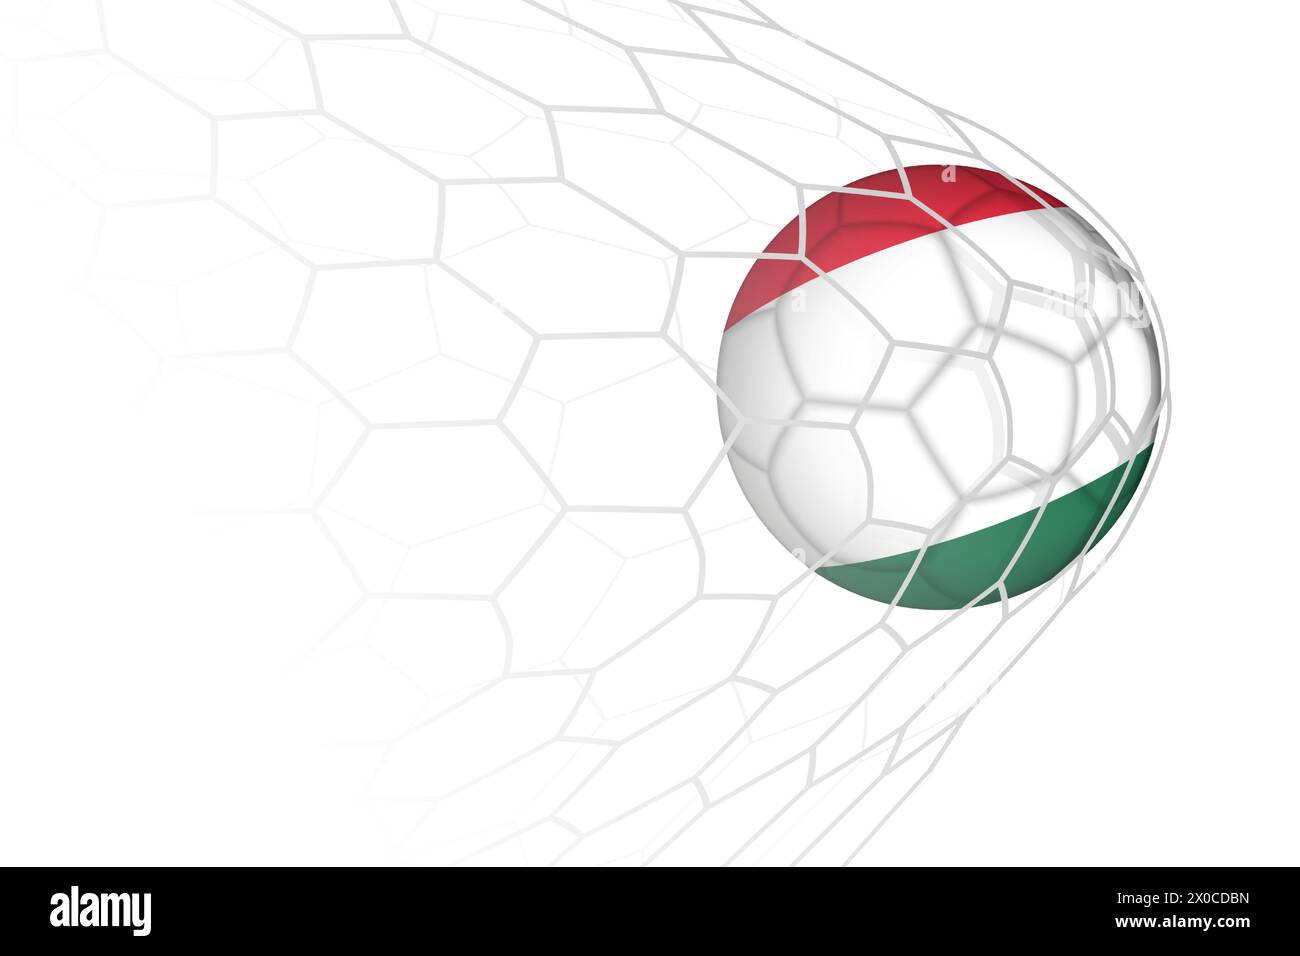 Hungary flag soccer ball in net. Vector sport illustration. Stock Vector